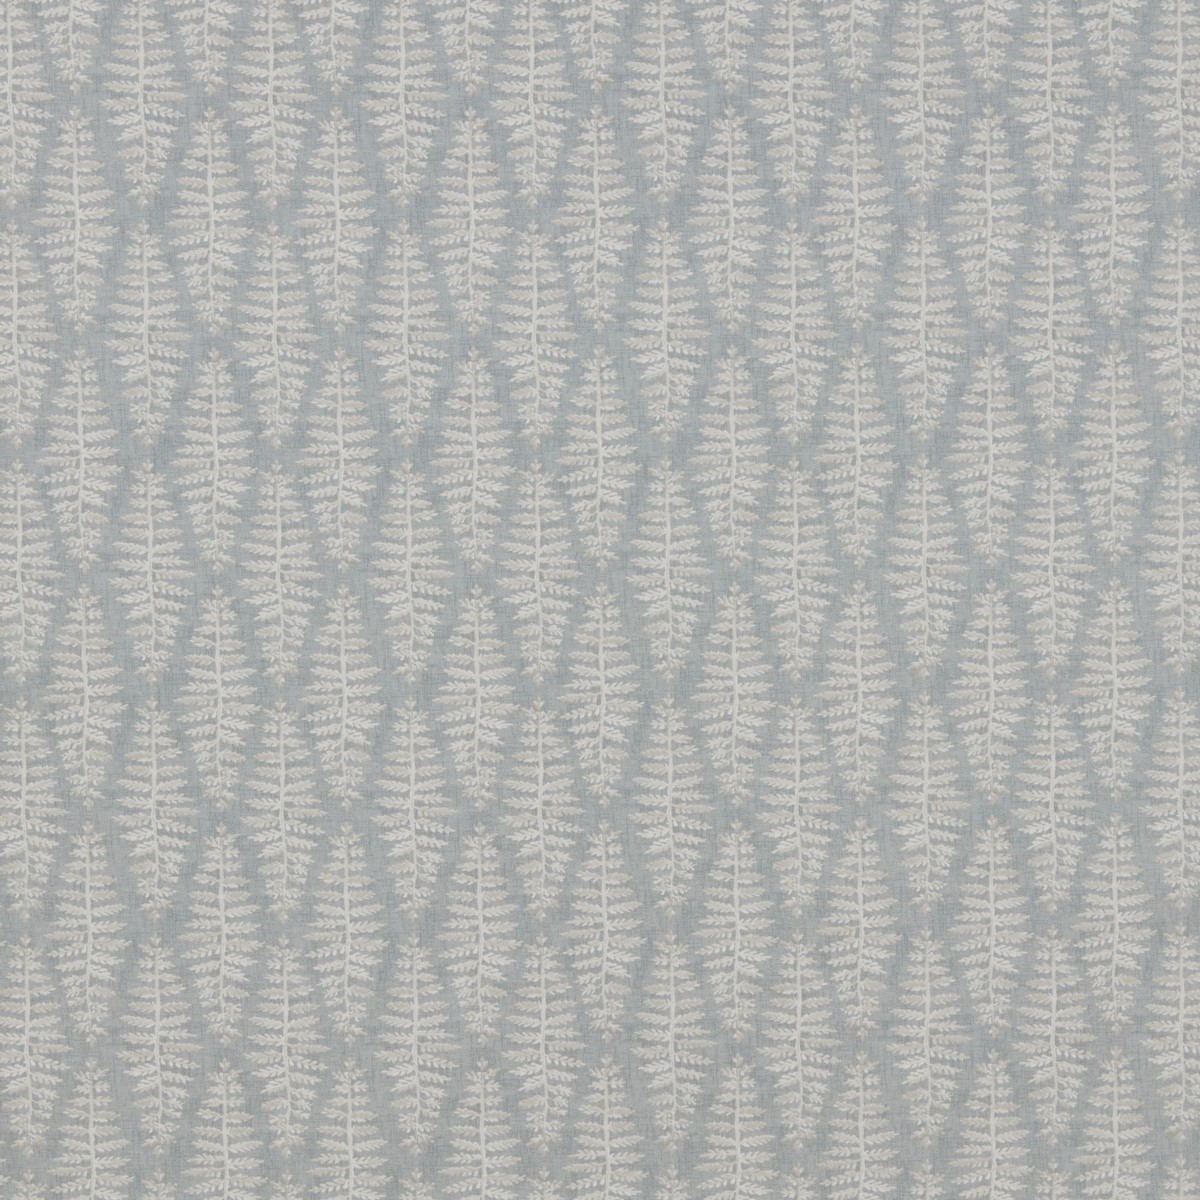 Fernia Blue Mist Fabric by iLiv